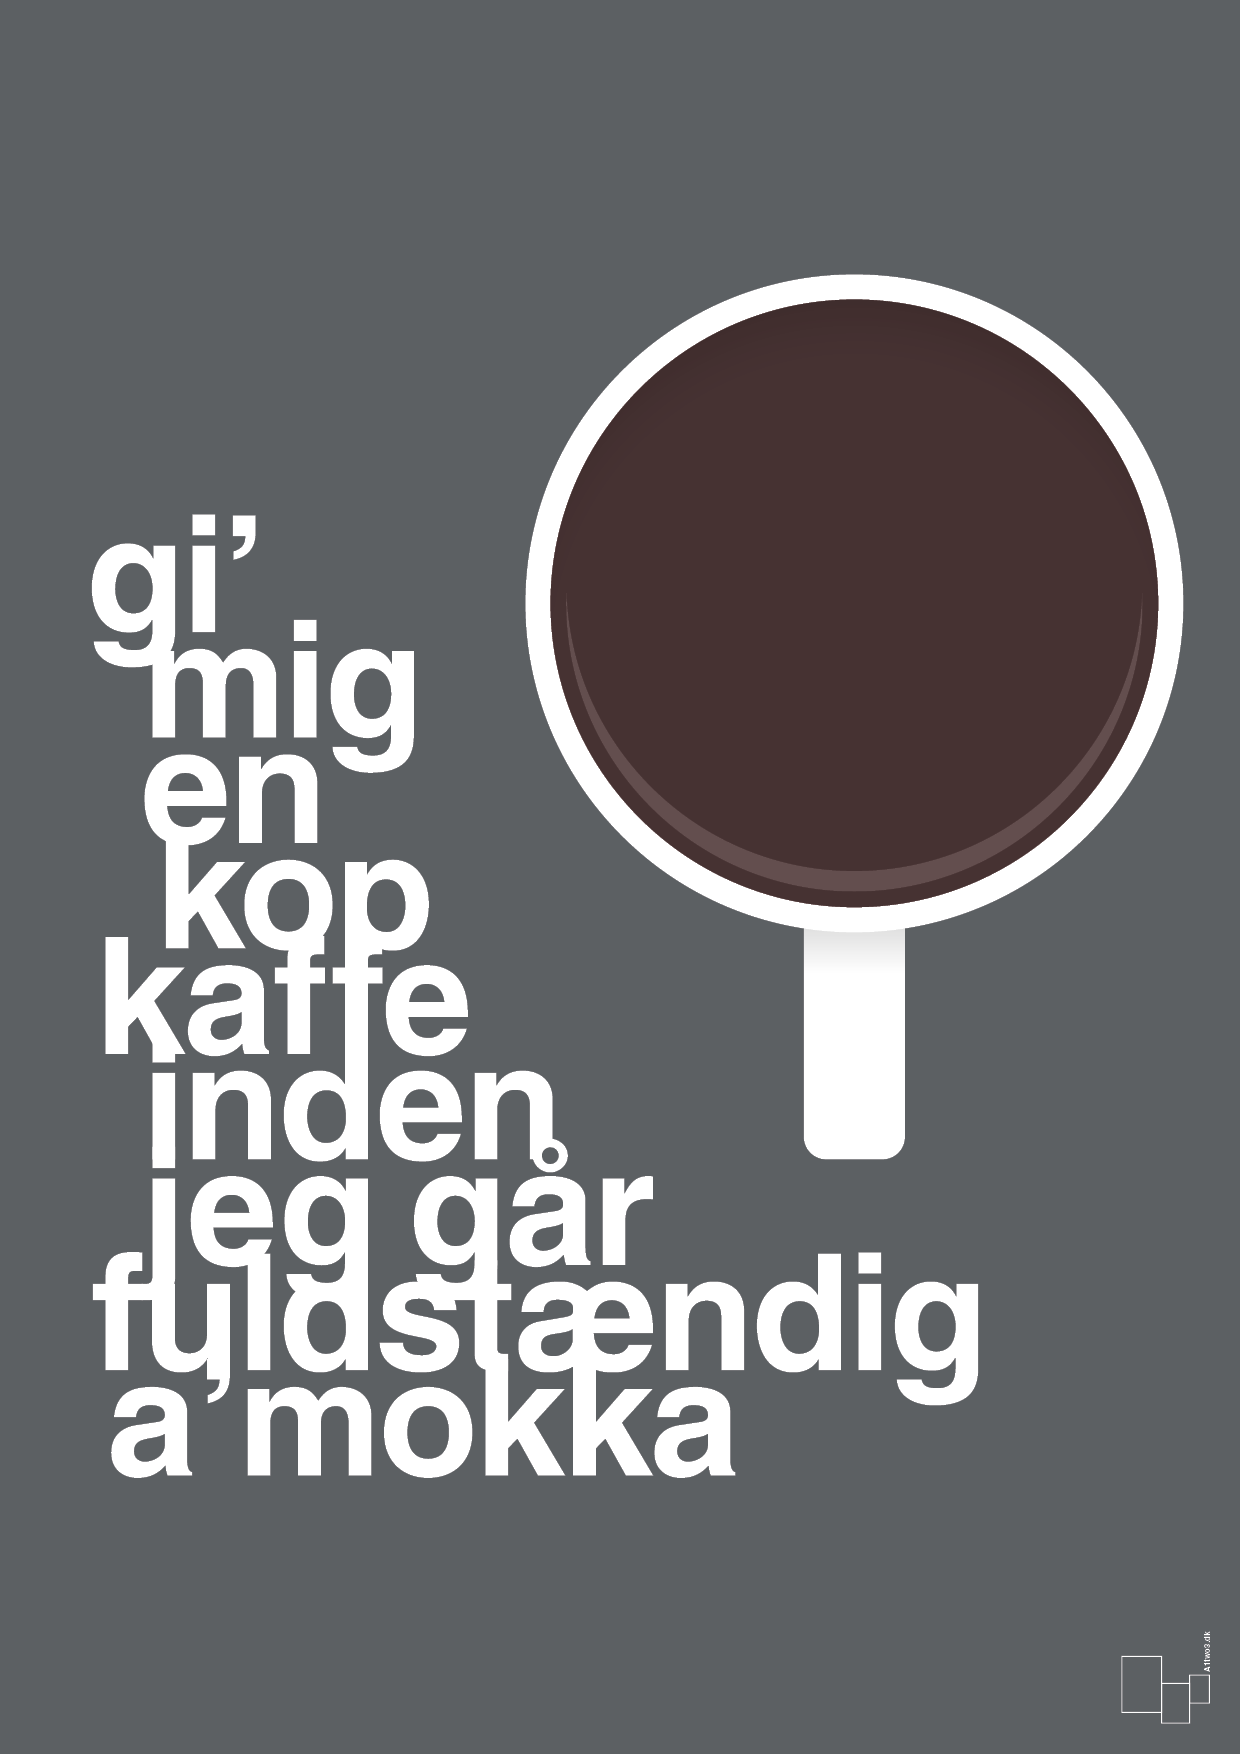 gi mig en kop kaffe inden jeg går fuldstændig amokka - Plakat med Mad & Drikke i Graphic Charcoal